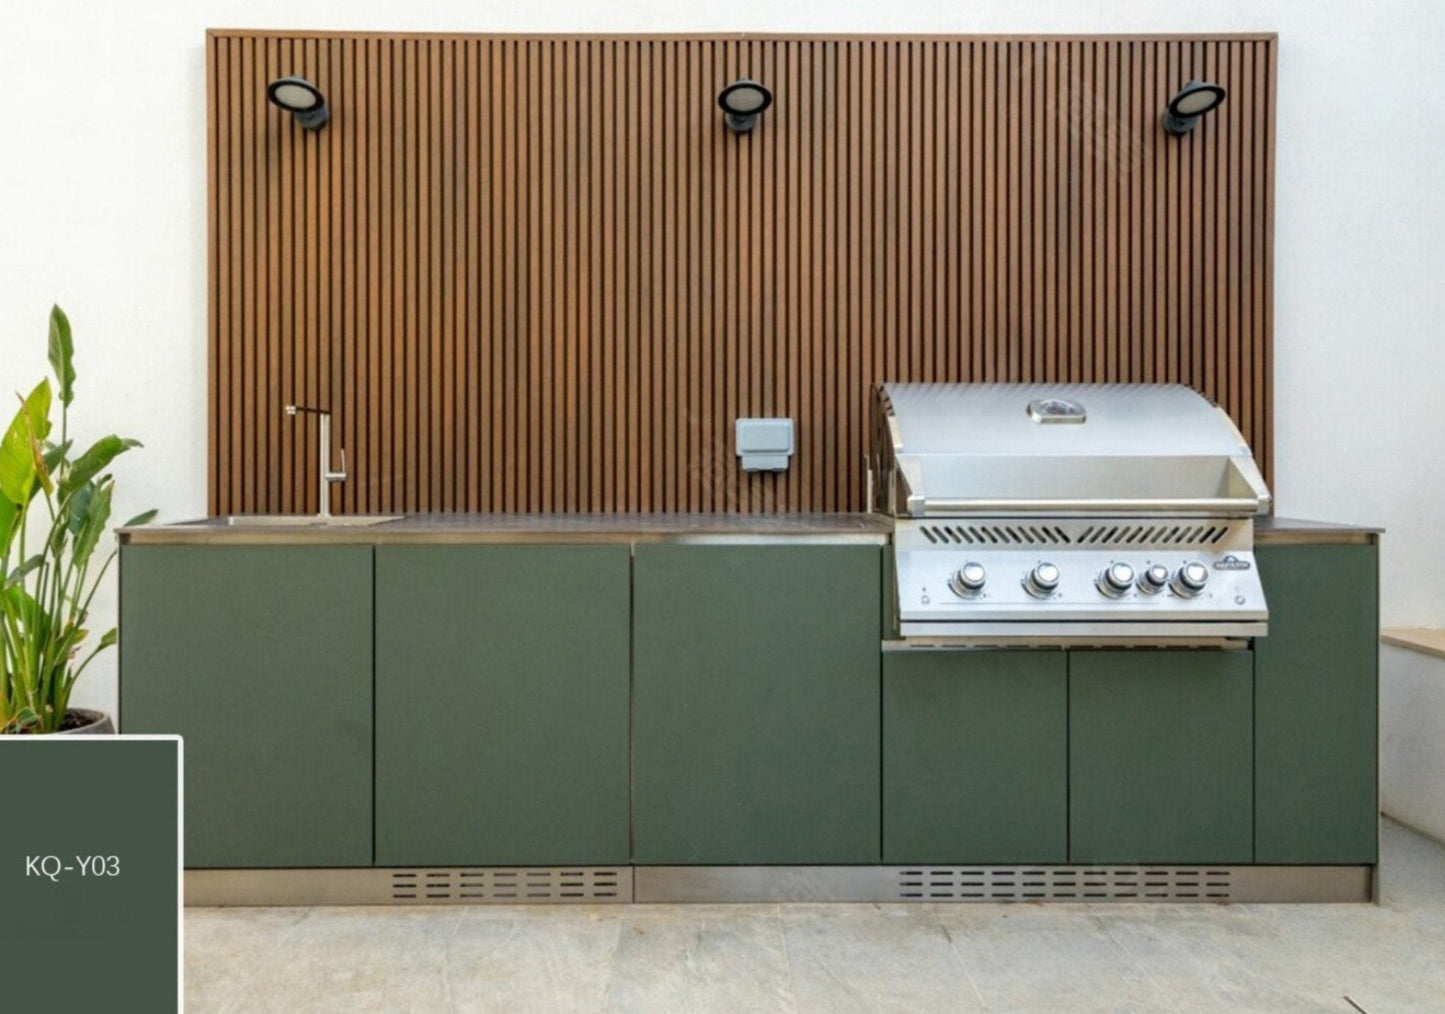 124 inch Dark Green Sunzout Designer Series Modular Outdoor Kitchen, 34 in 4 Burner Grill, 24 inch Refrigerator, Sink